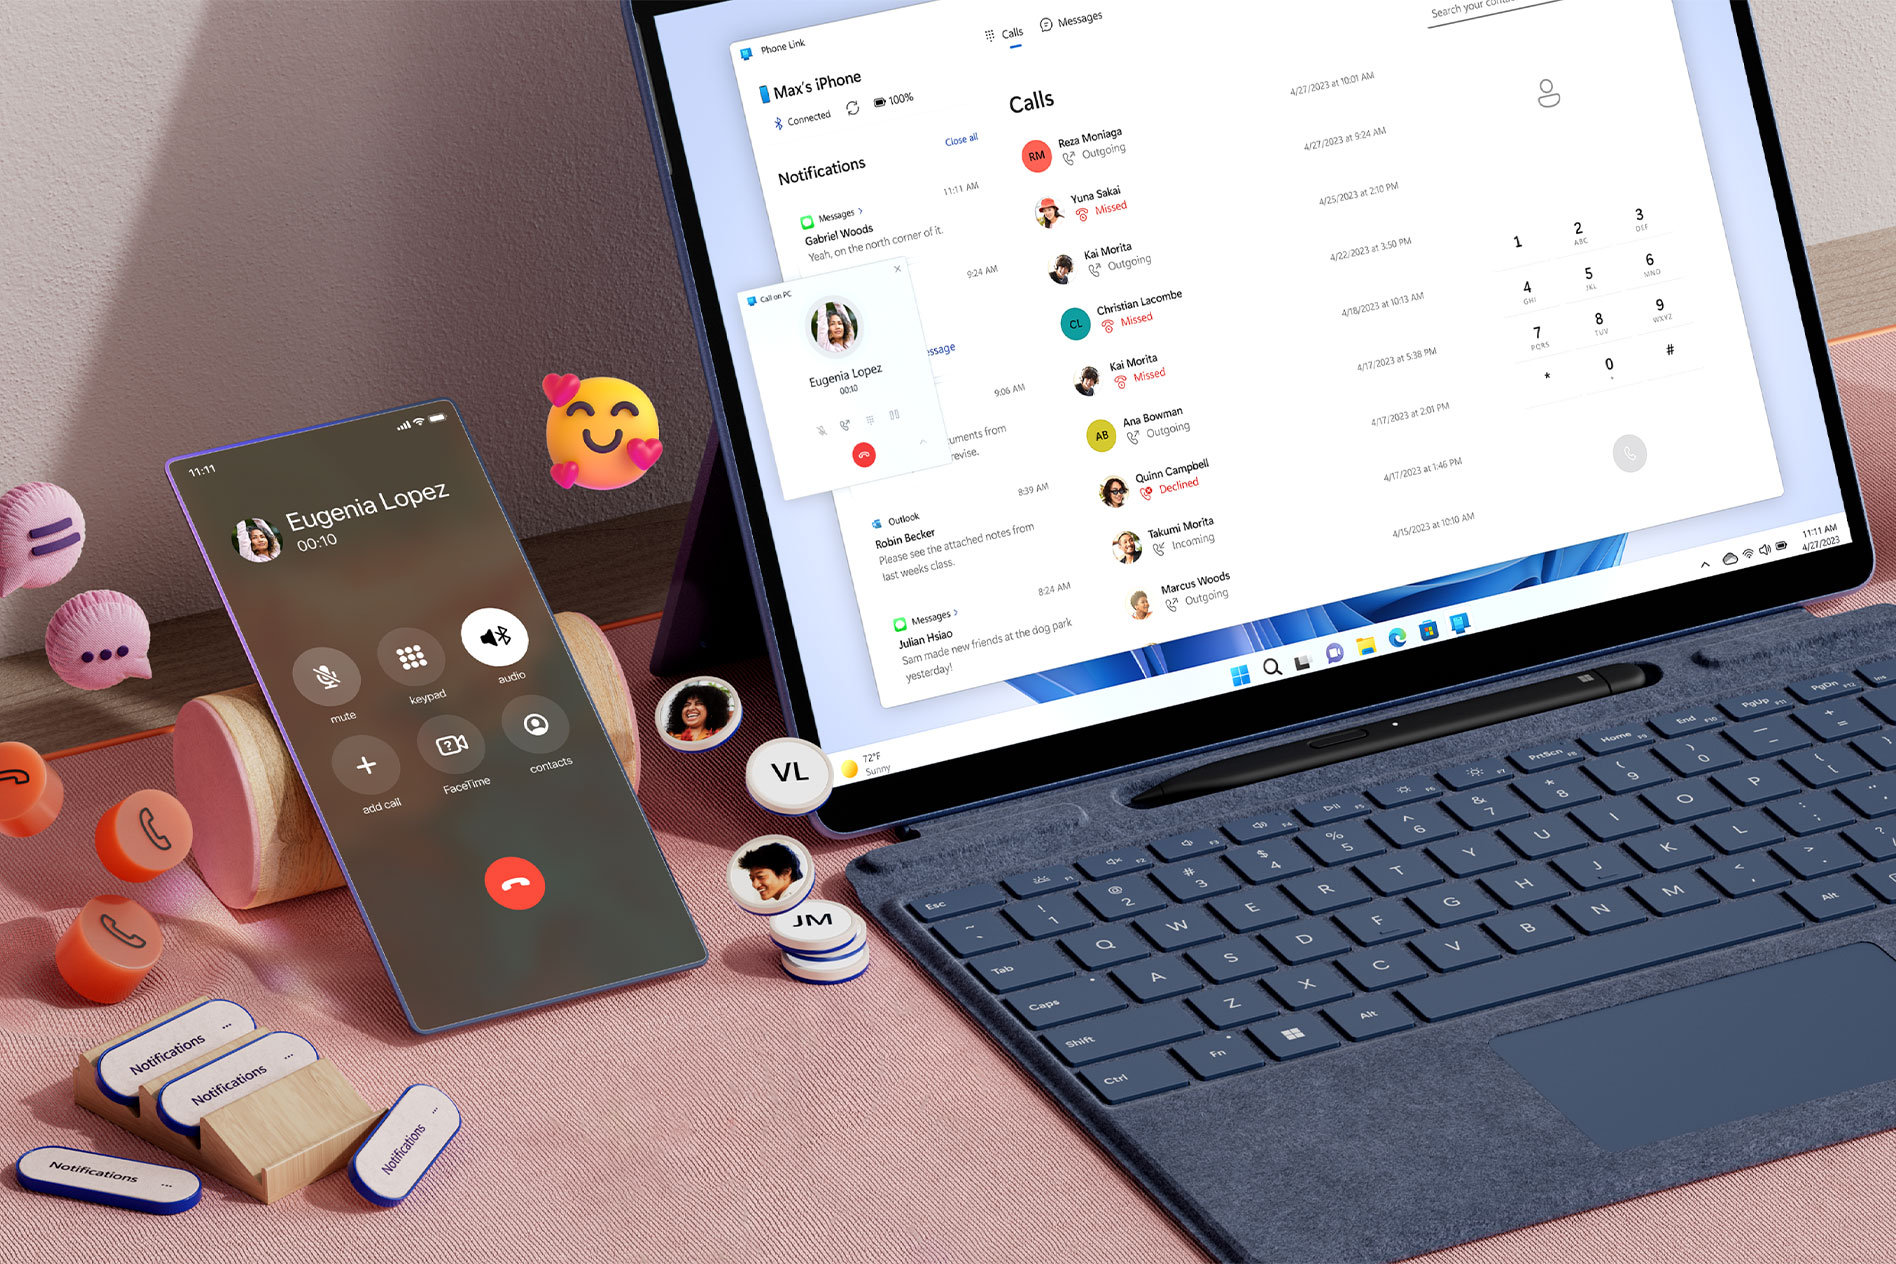 Ein Surface Pro 9 auf einem Schreibtisch mit Benachrichtigungen über Telefonanrufe auf dem Bildschirm, während ein Smartphone neben dem Gerät liegt. Um das Smartphone herum schweben Telefon- und Chatsymbole sowie Emojis.